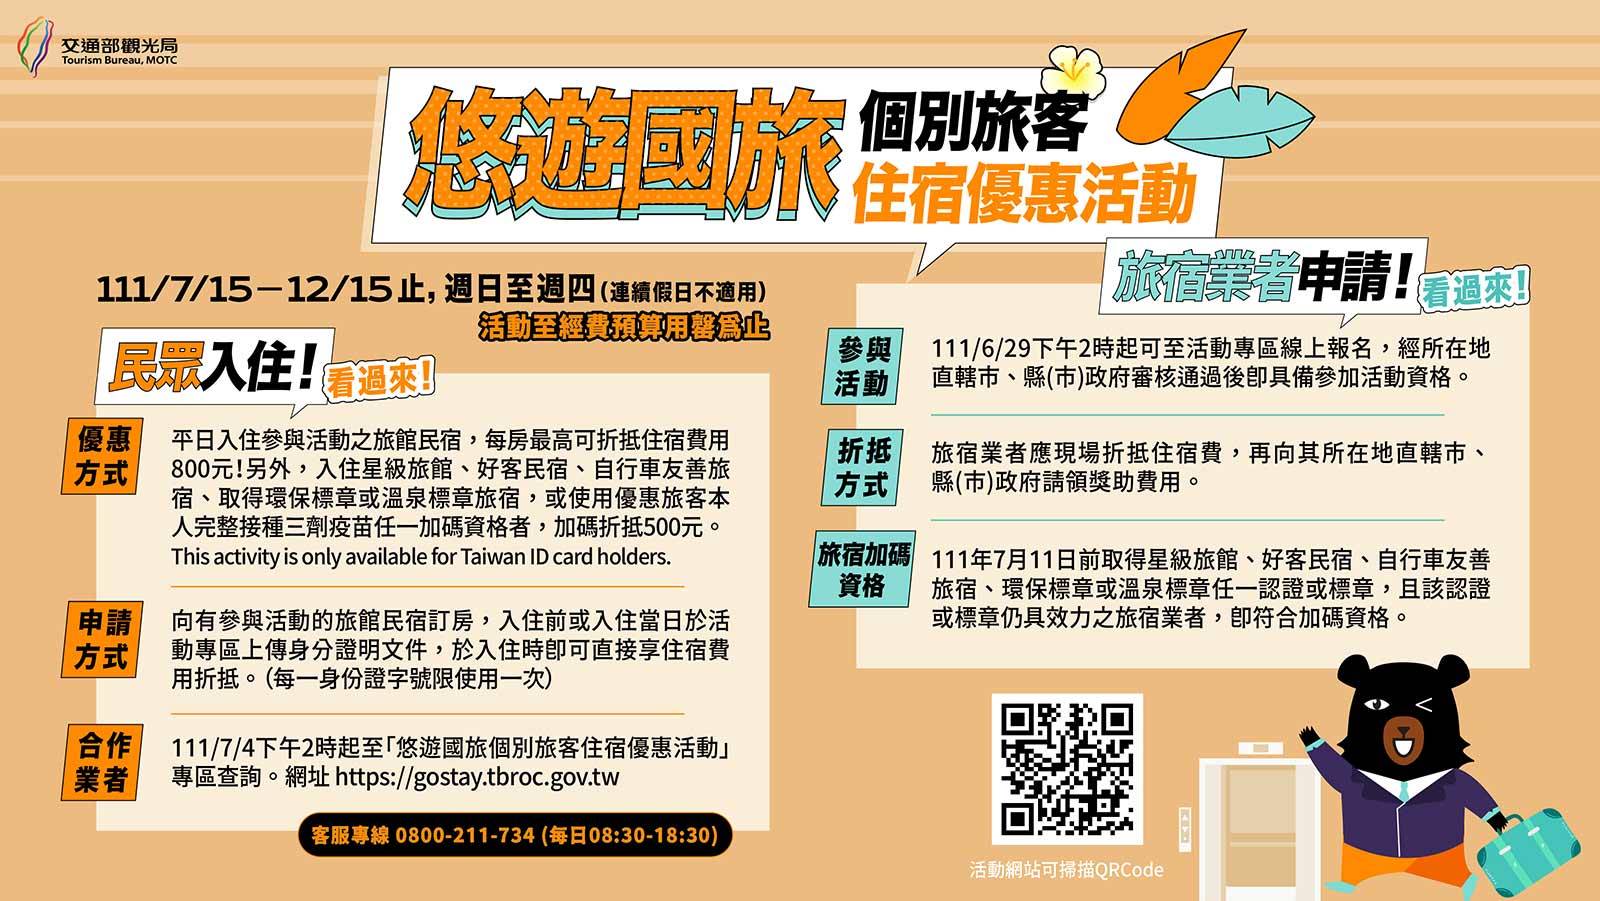 自由行旅客可到台灣旅宿網查詢參與業者。